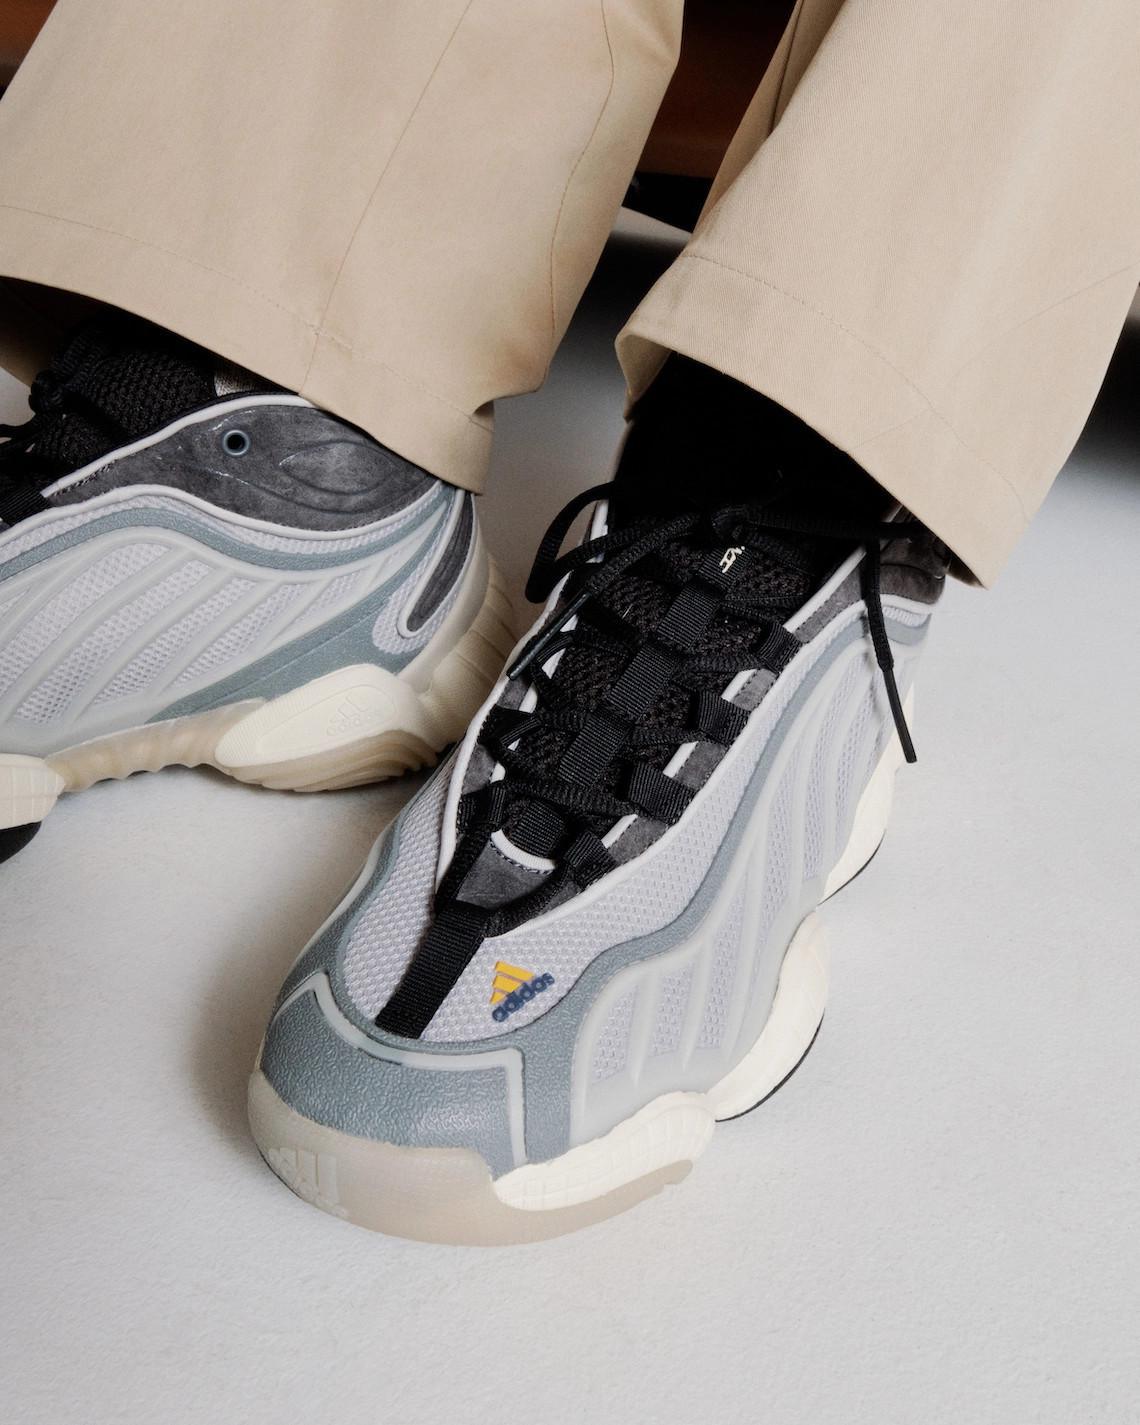 Packer Shoes dévoile l'intimidation adidas FYW pour le printemps 2023